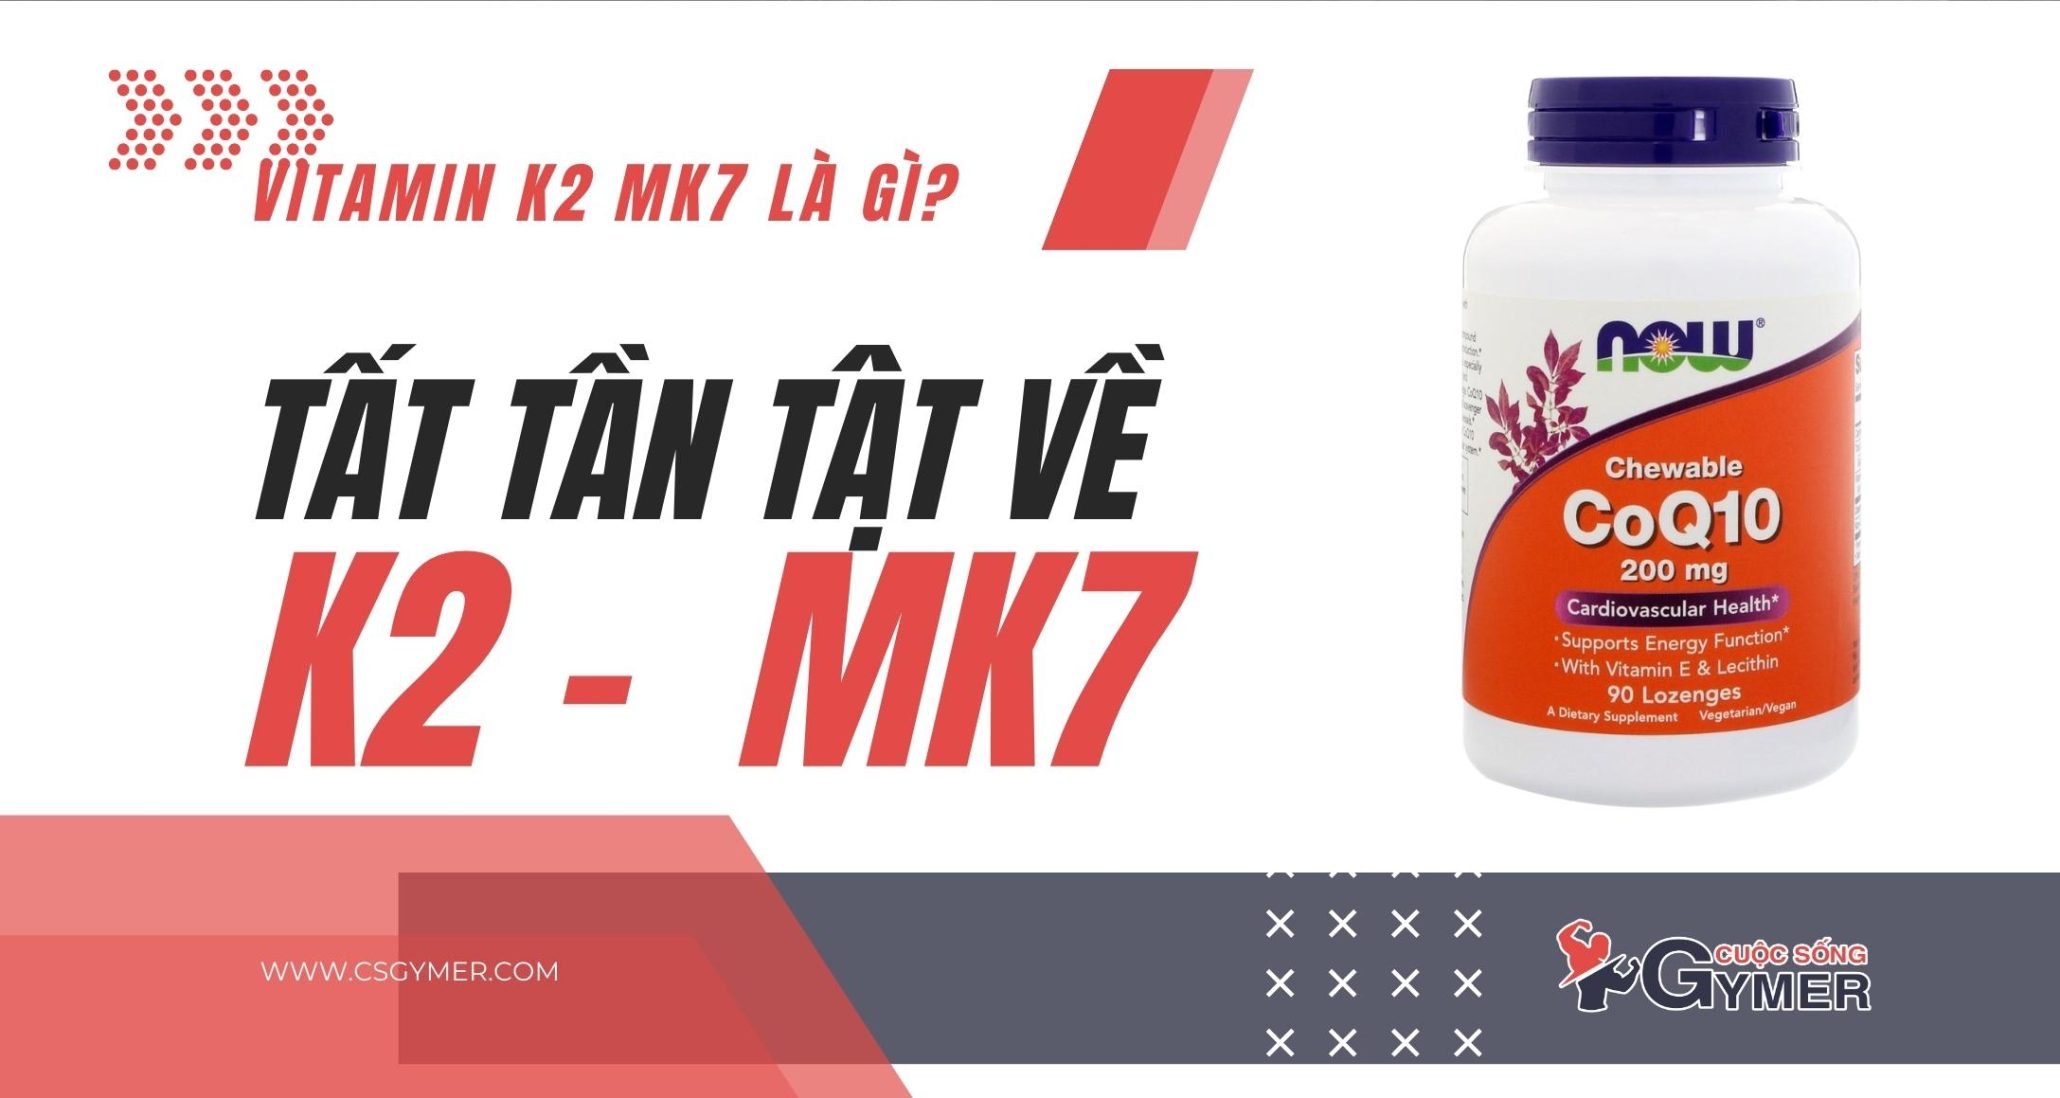 Vitamin K2 Mk7 là gì? Tất tần tật về K2 Mk7